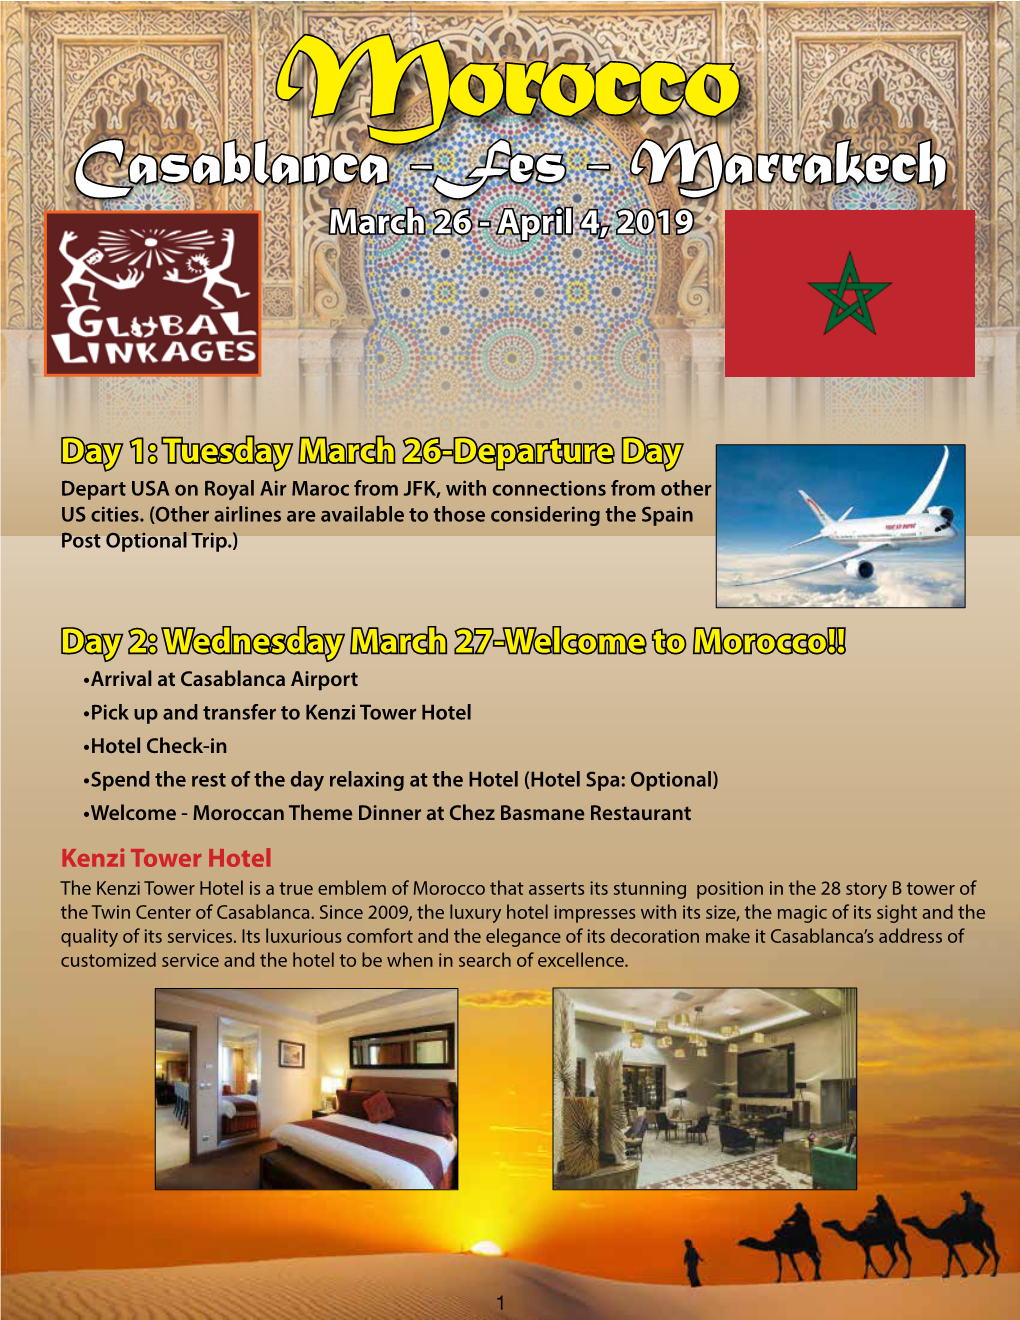 Fes - Marrakech March 26 - April 4, 2019